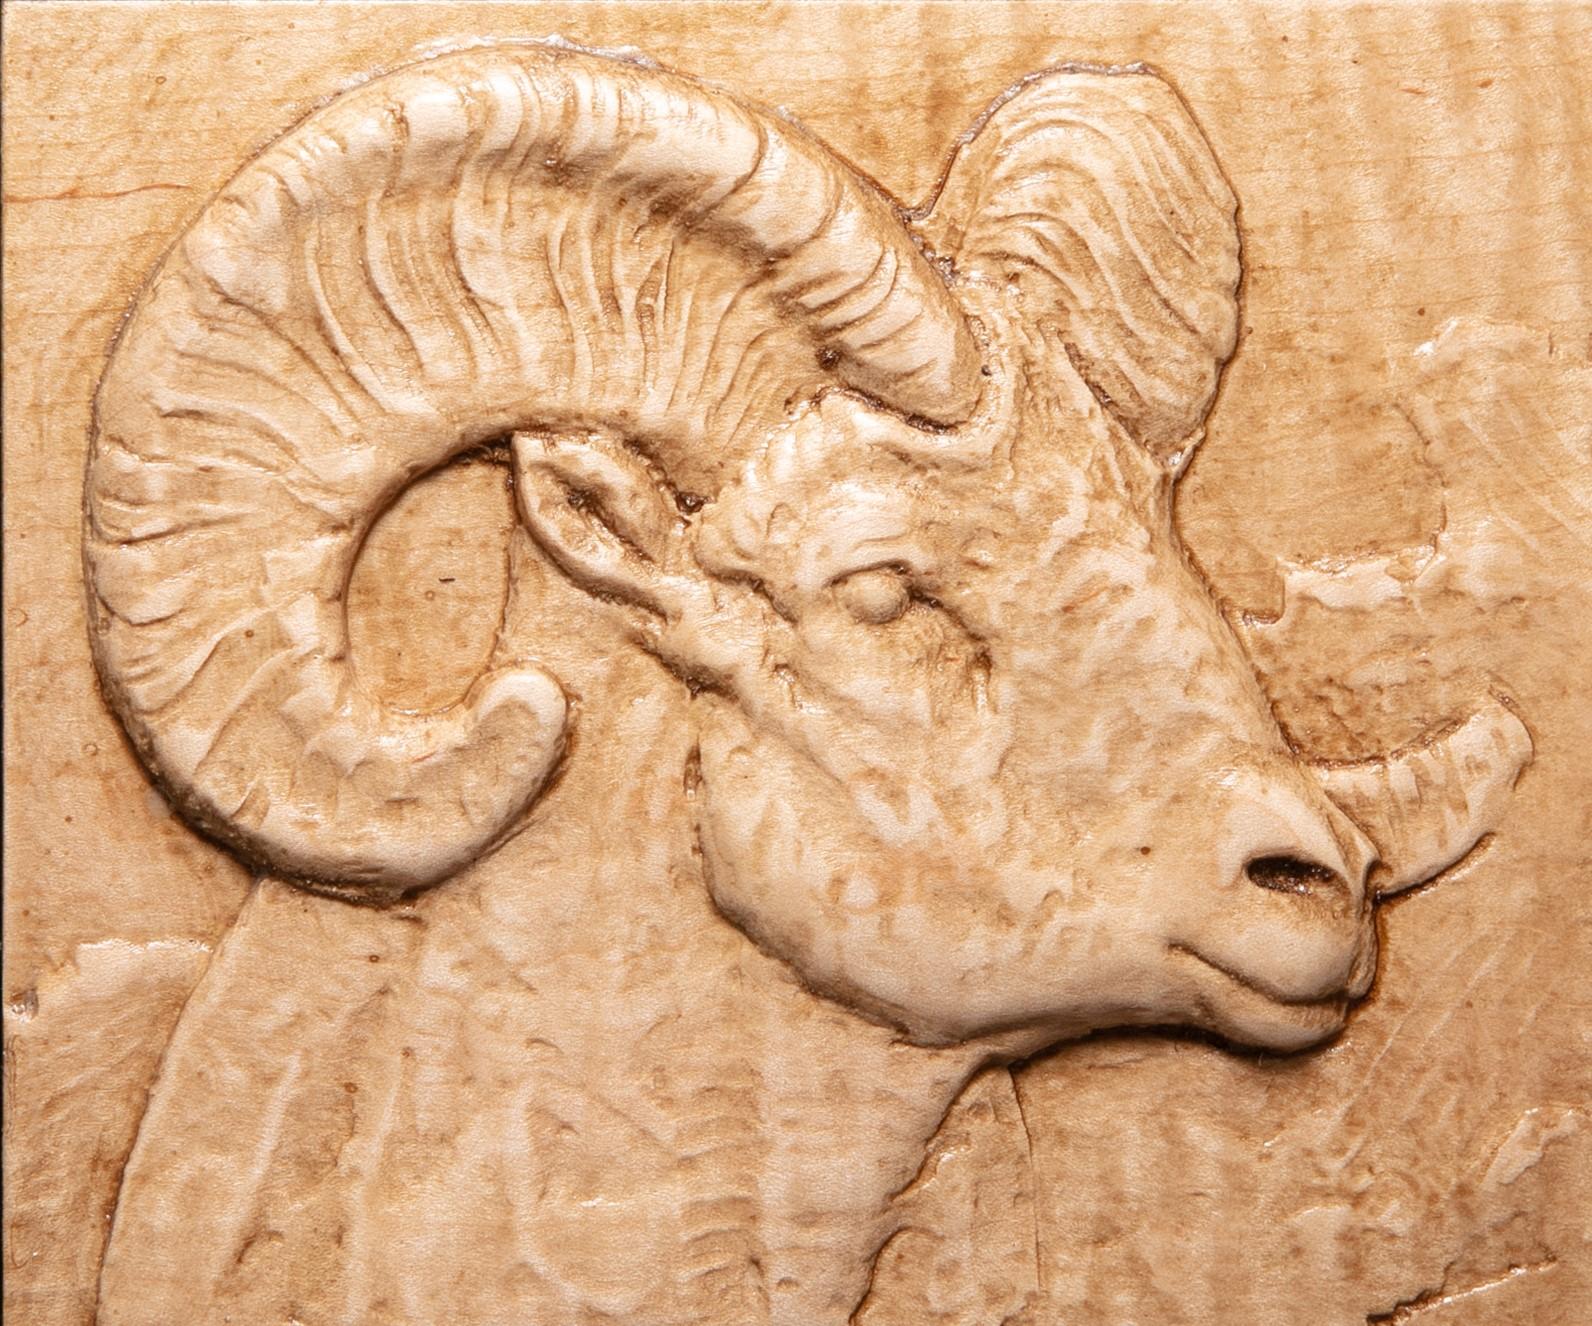 Dana Younger Figurative Sculpture - "Bighorn Sheep" Bas-relief Sculpture